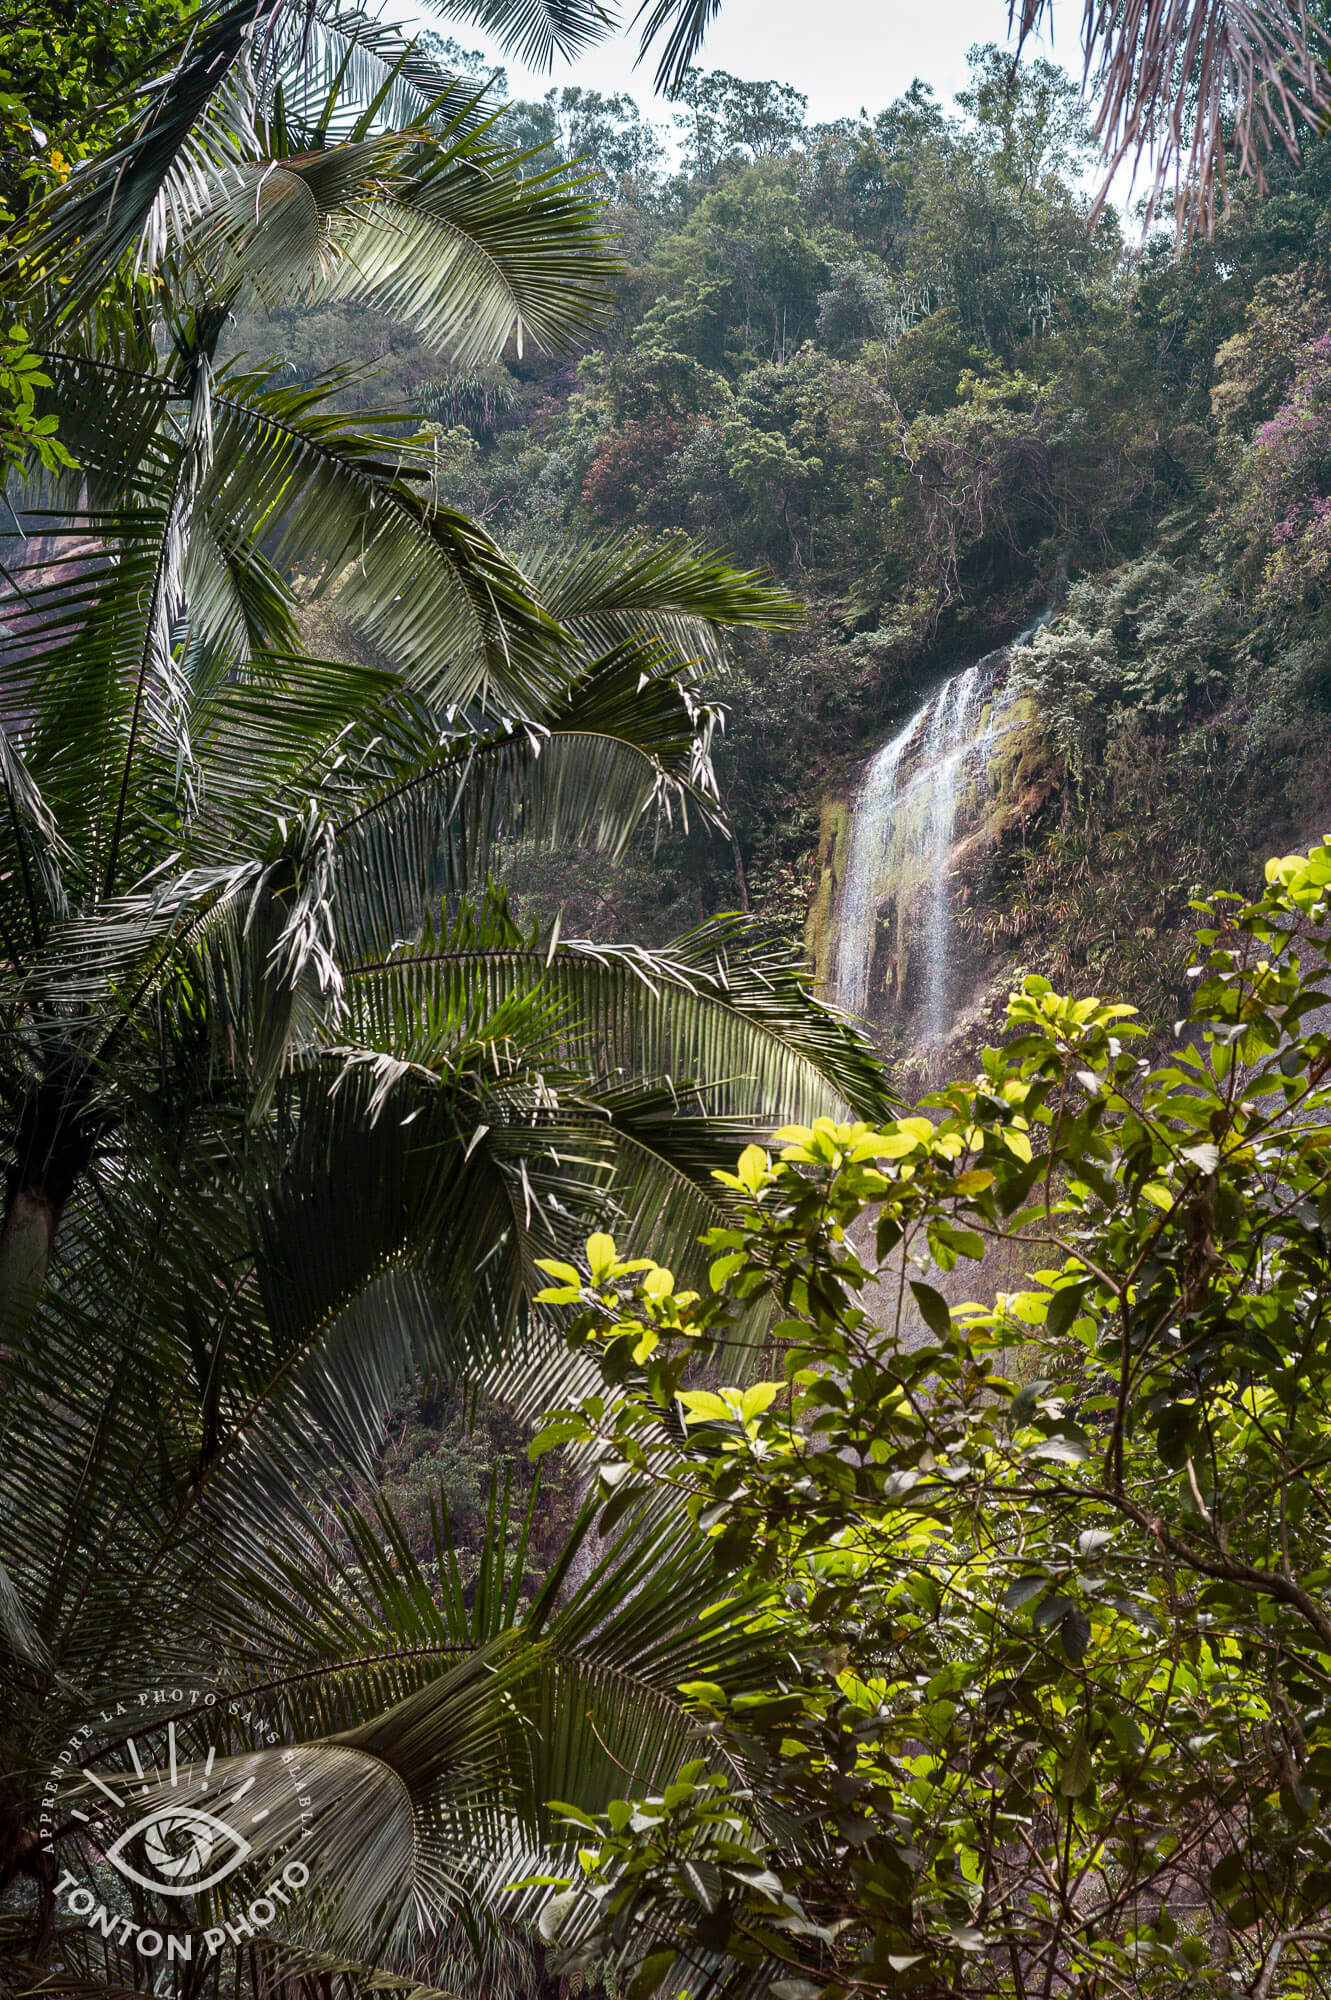 Ambiance sauvage digne du livre de la jungle ! Sumatra, Indonésie © Clément Racineux / Tonton Photo